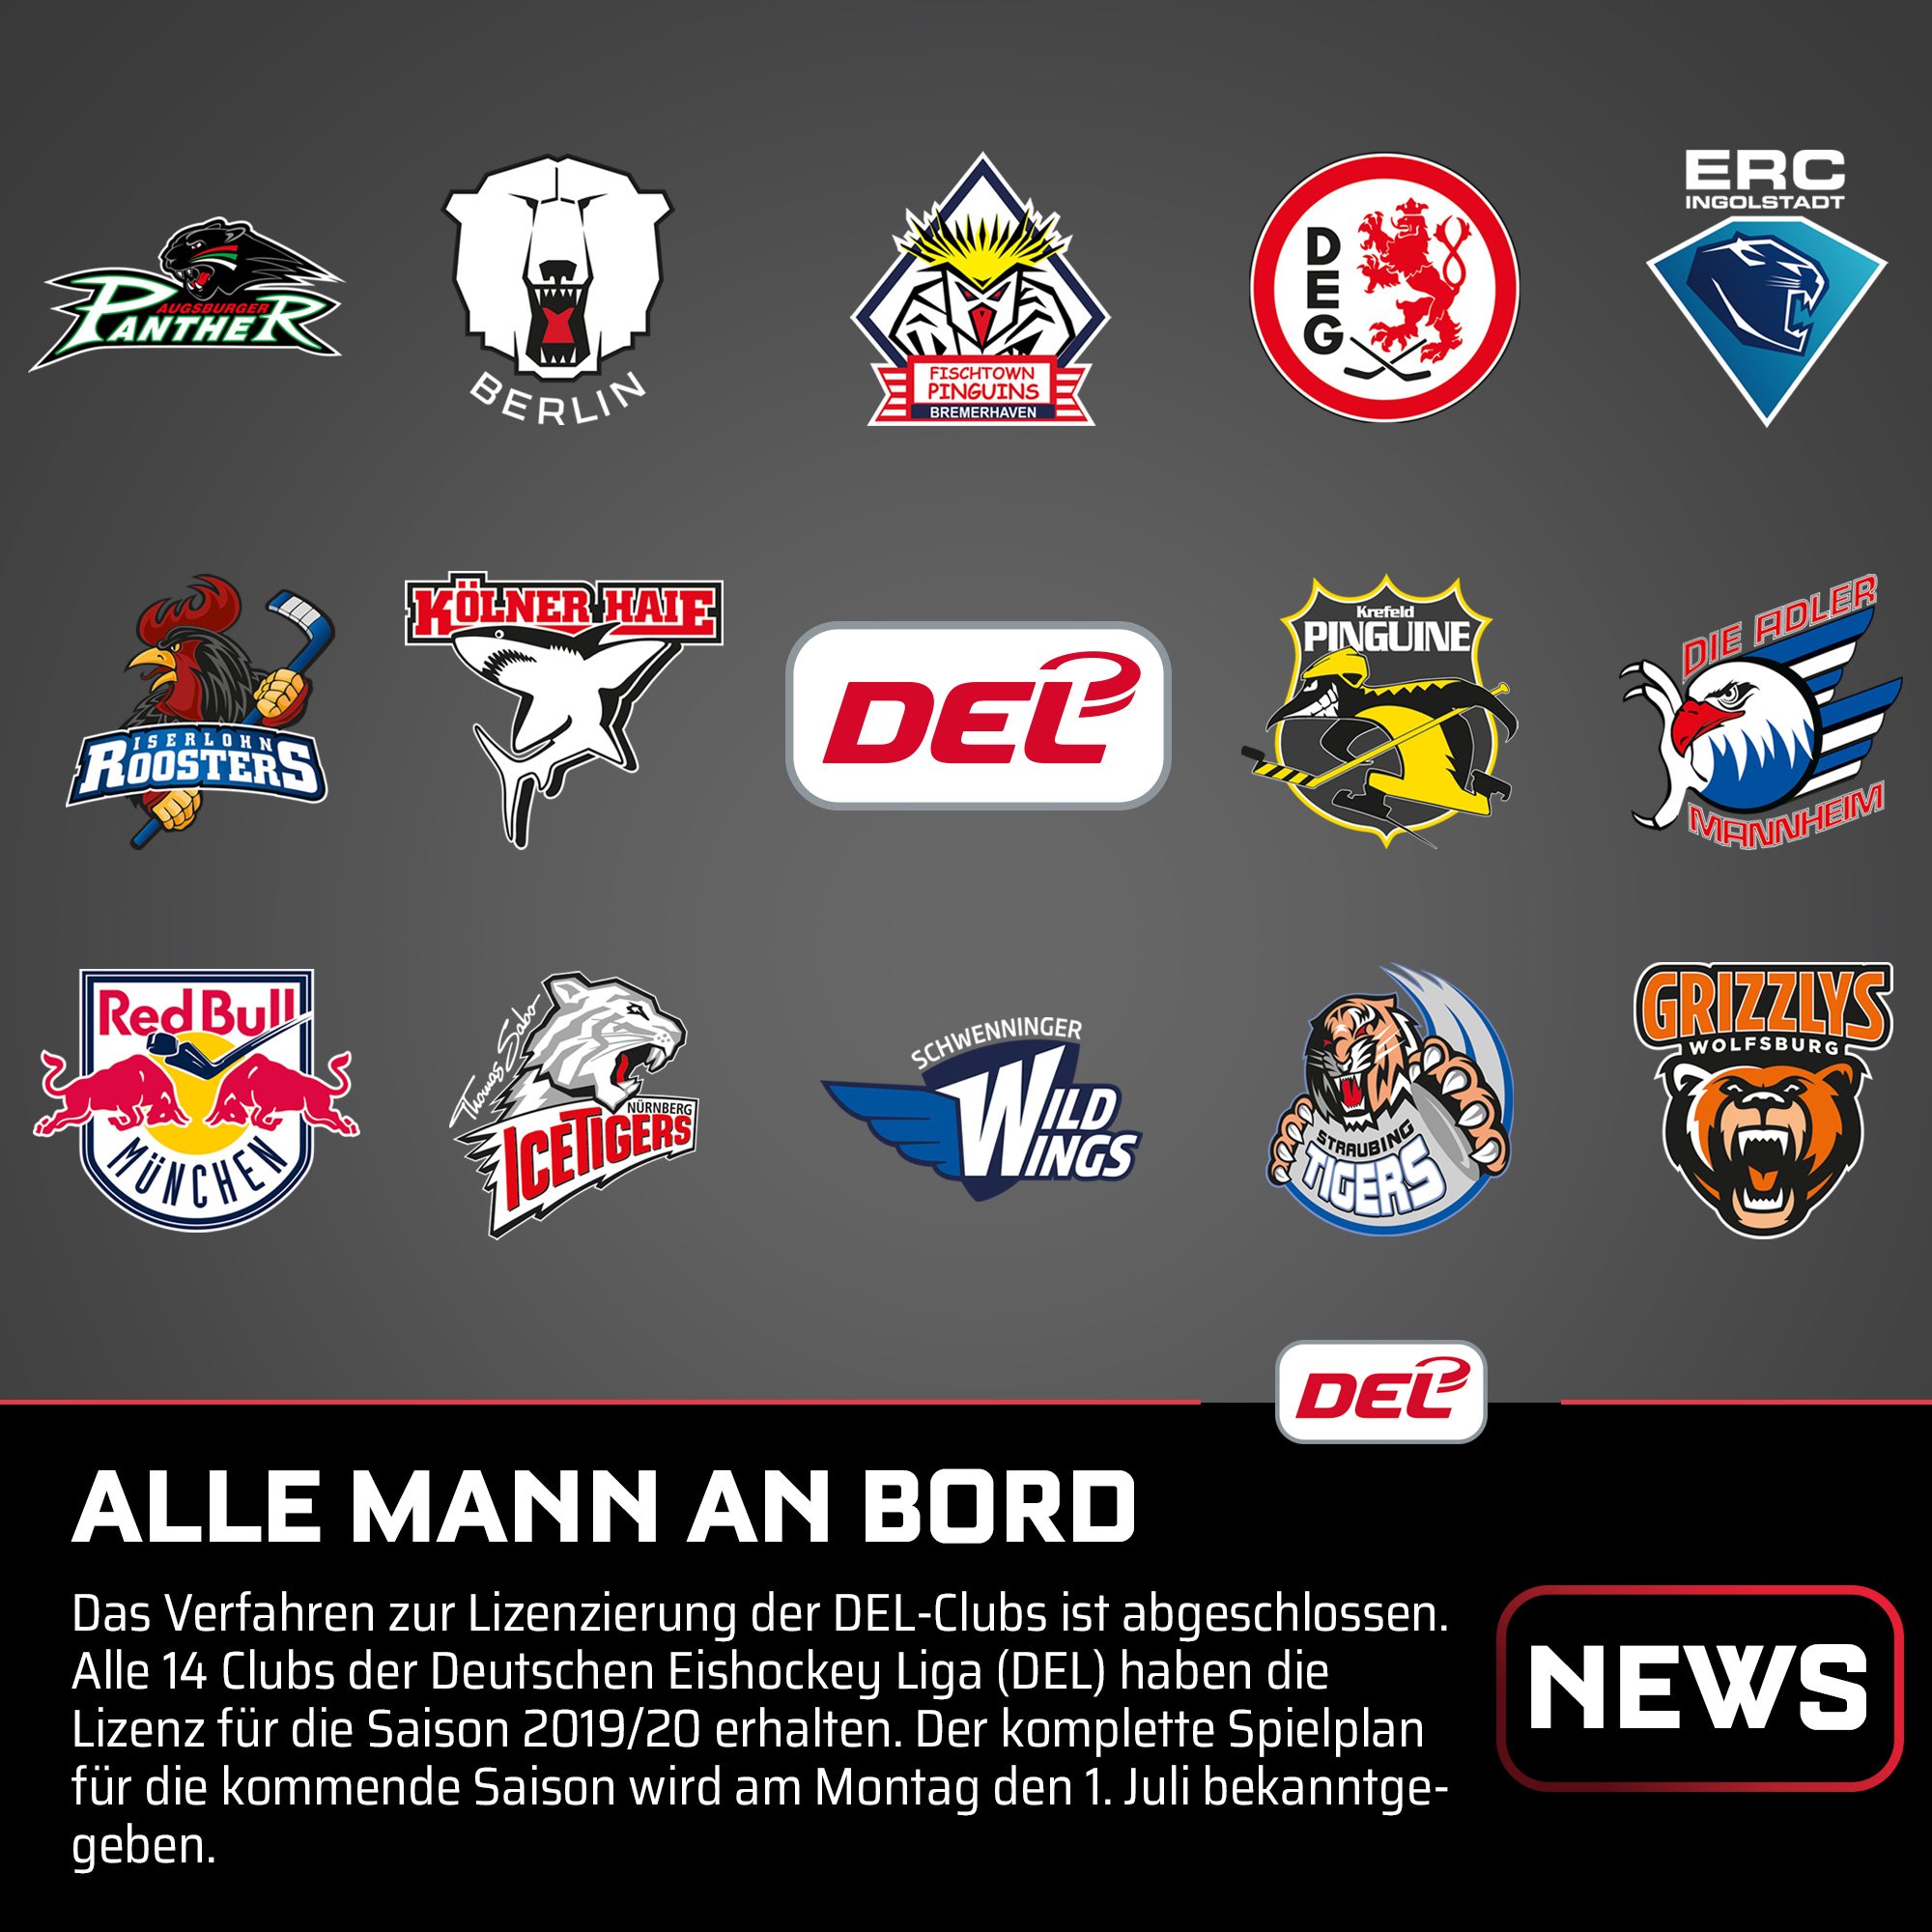 Deutsche Eishockey Liga on X